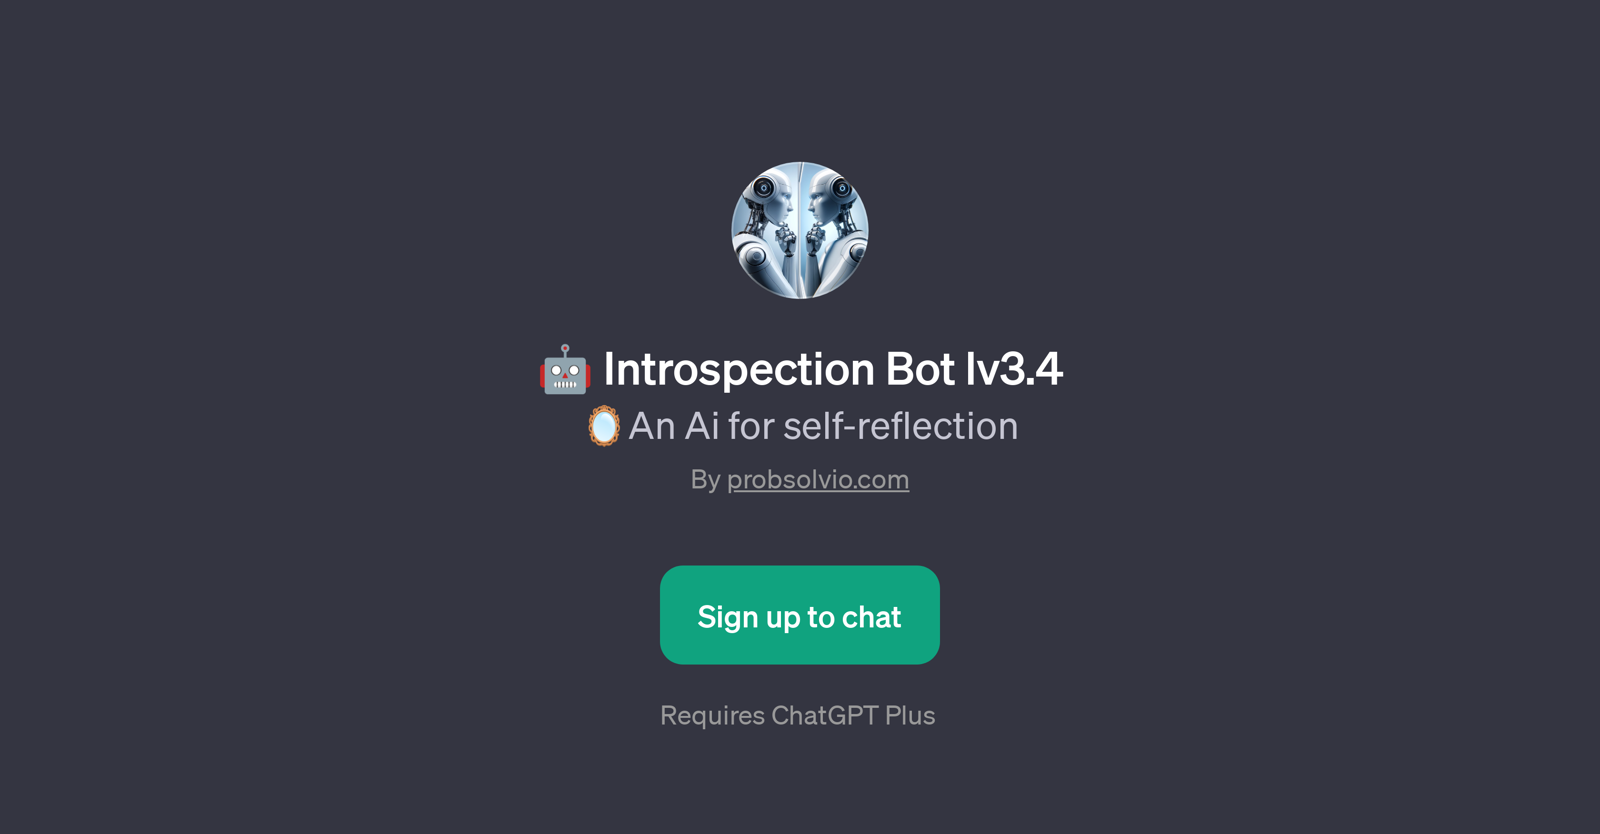 Introspection Bot lv3.4 website